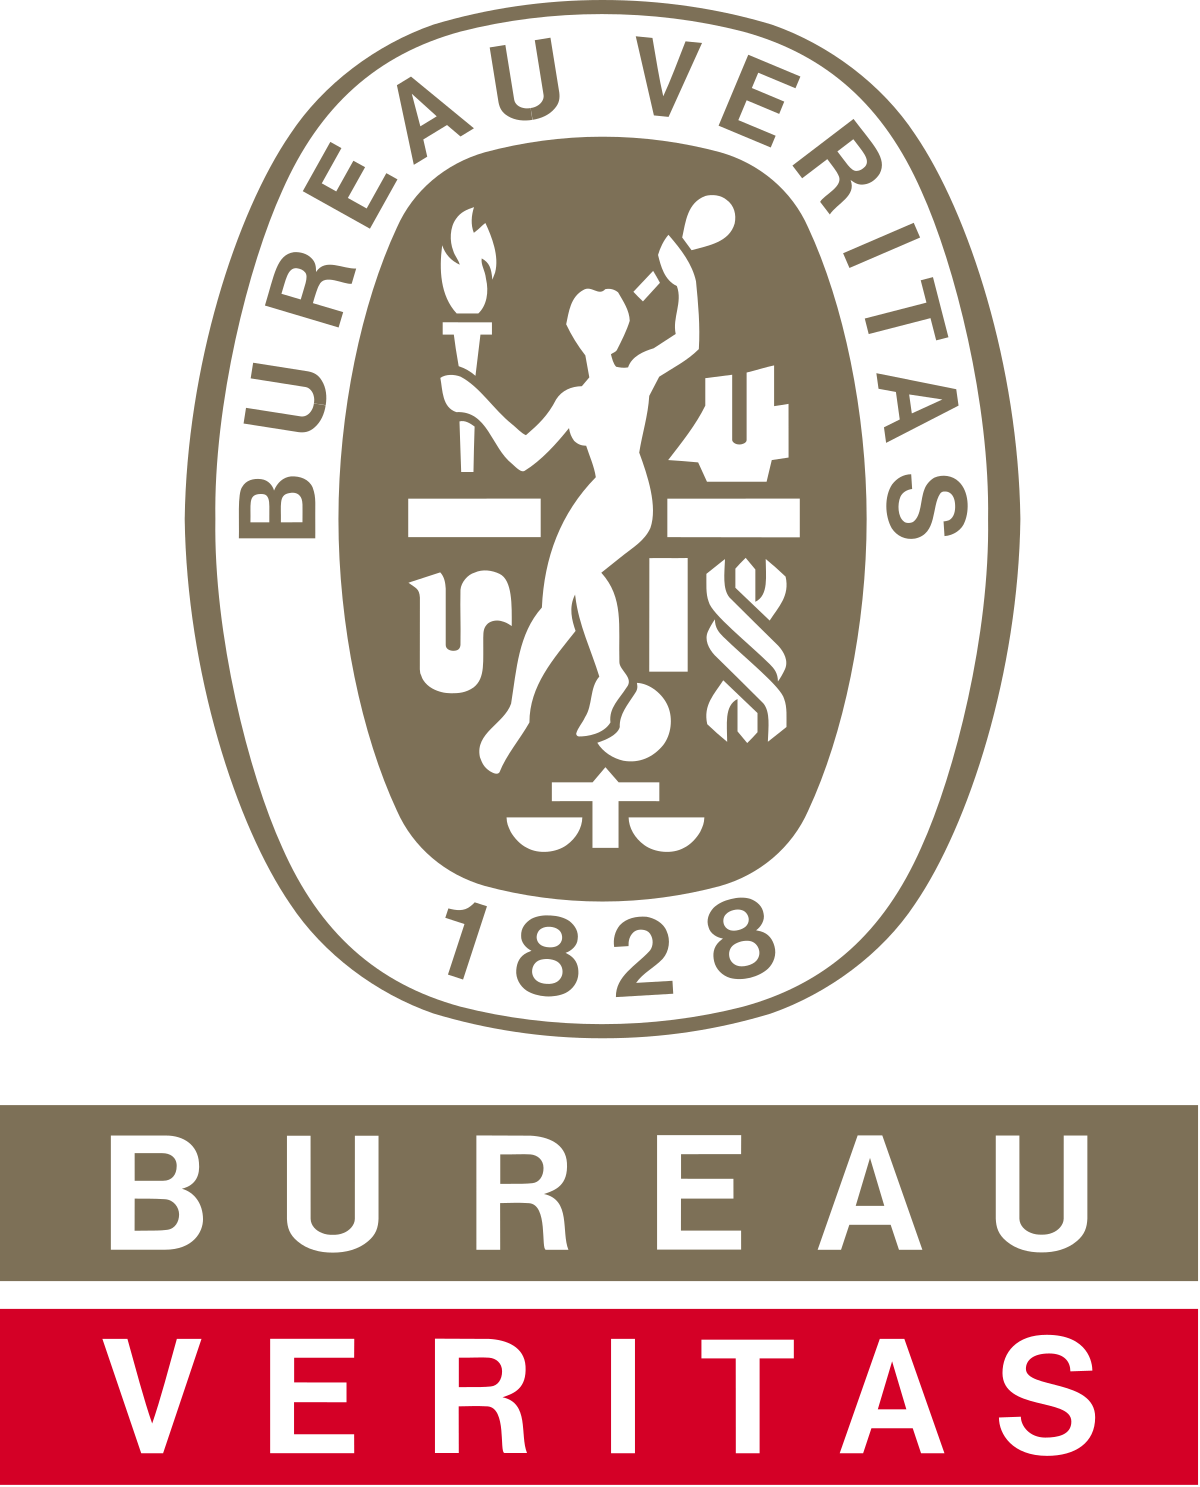 Bureau Veritas Logo - Bureau Veritas – Wikipedia